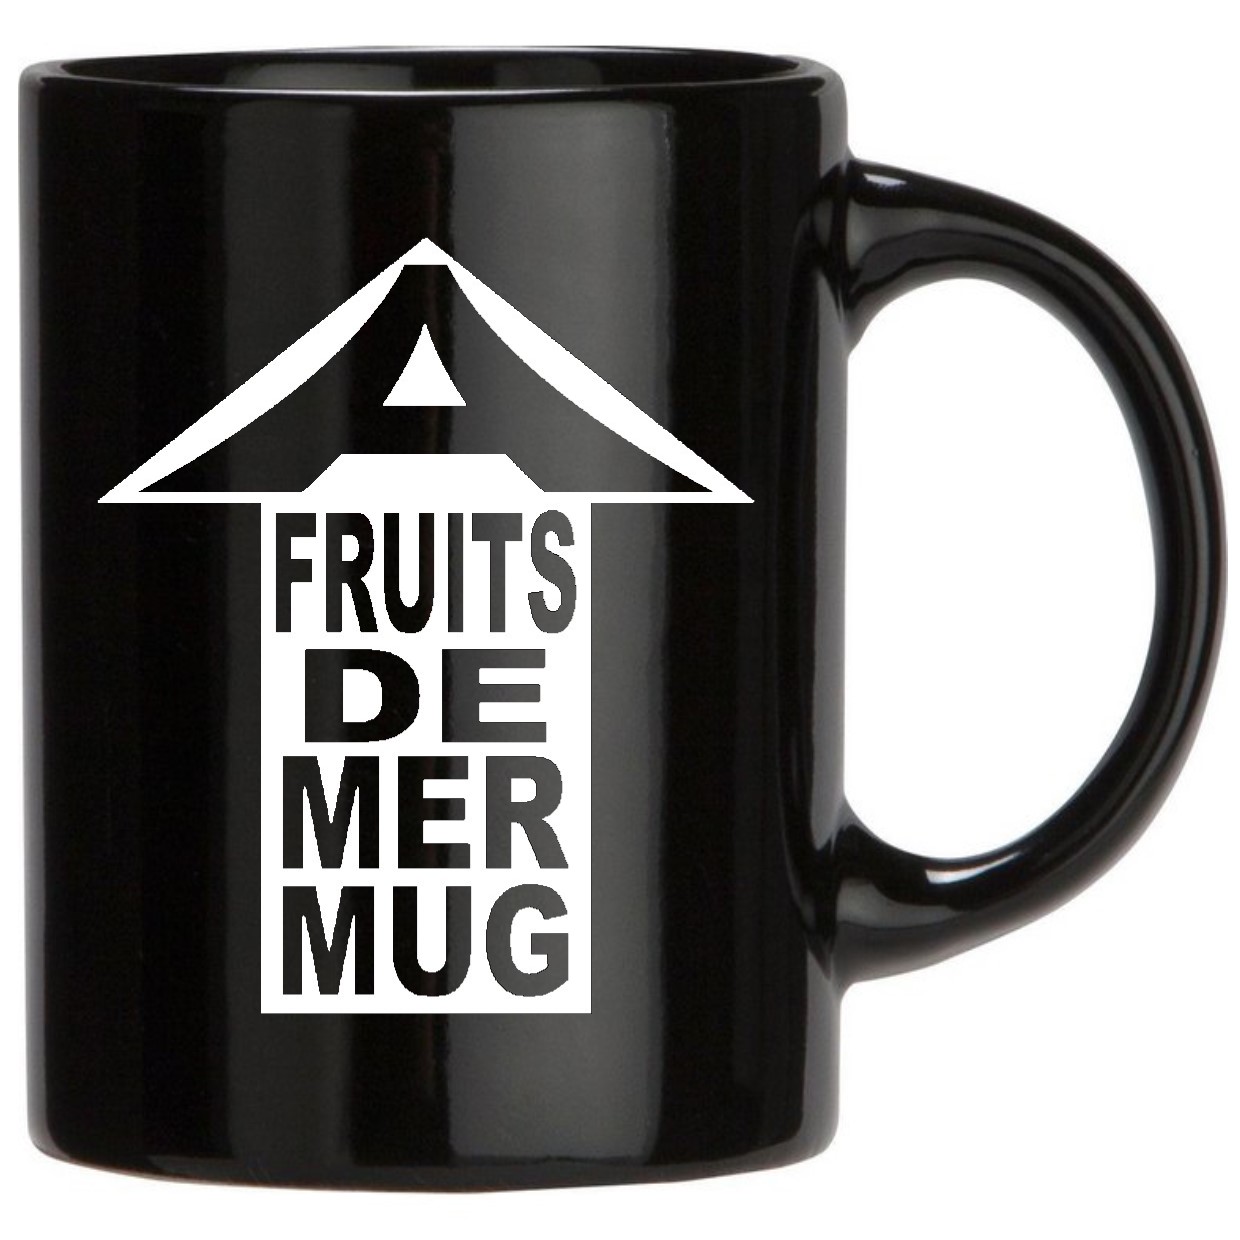 a Fruits de Mer mug